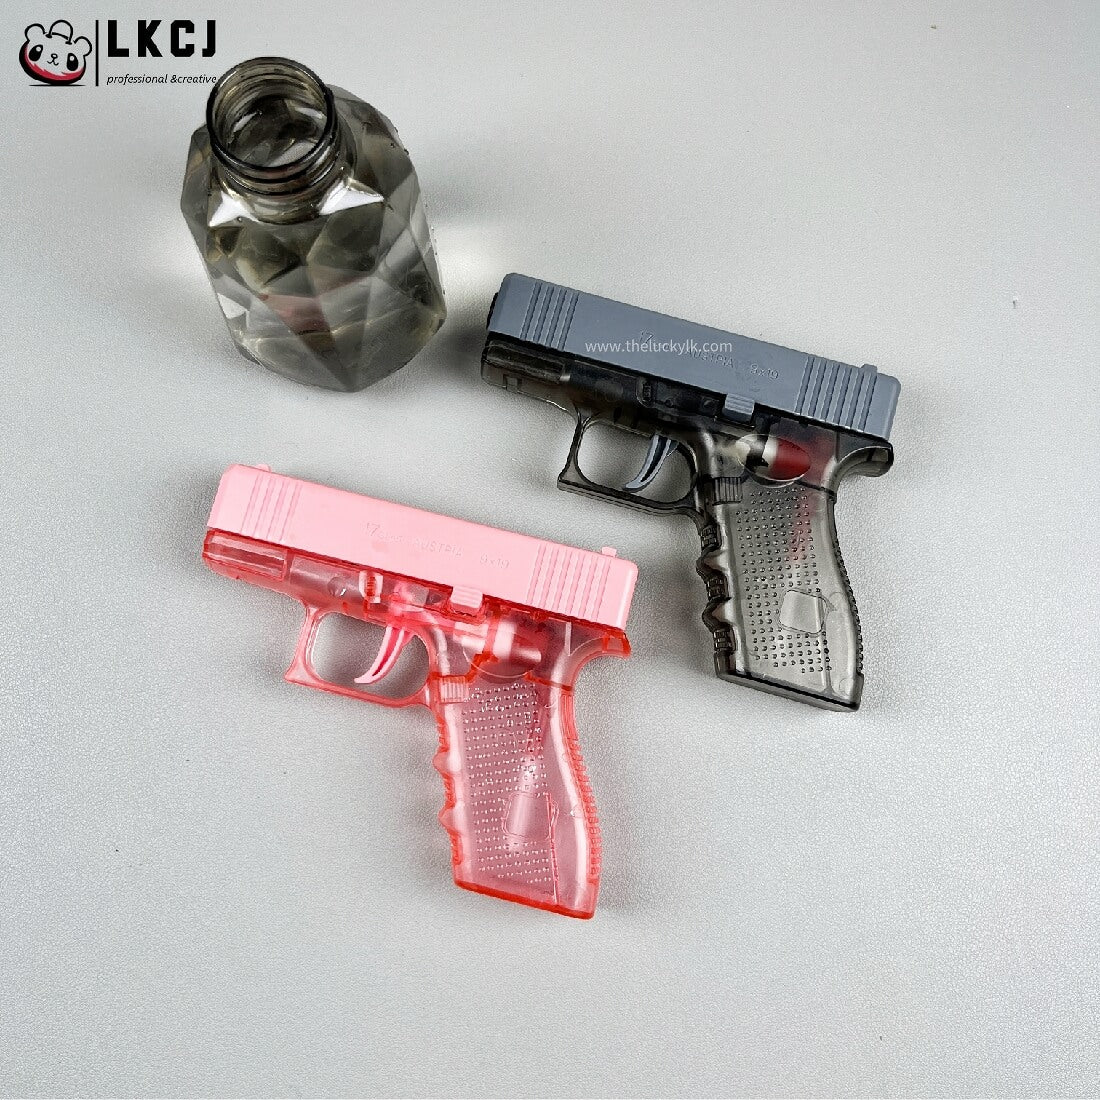 2 x Mini Water Gun LKCJ